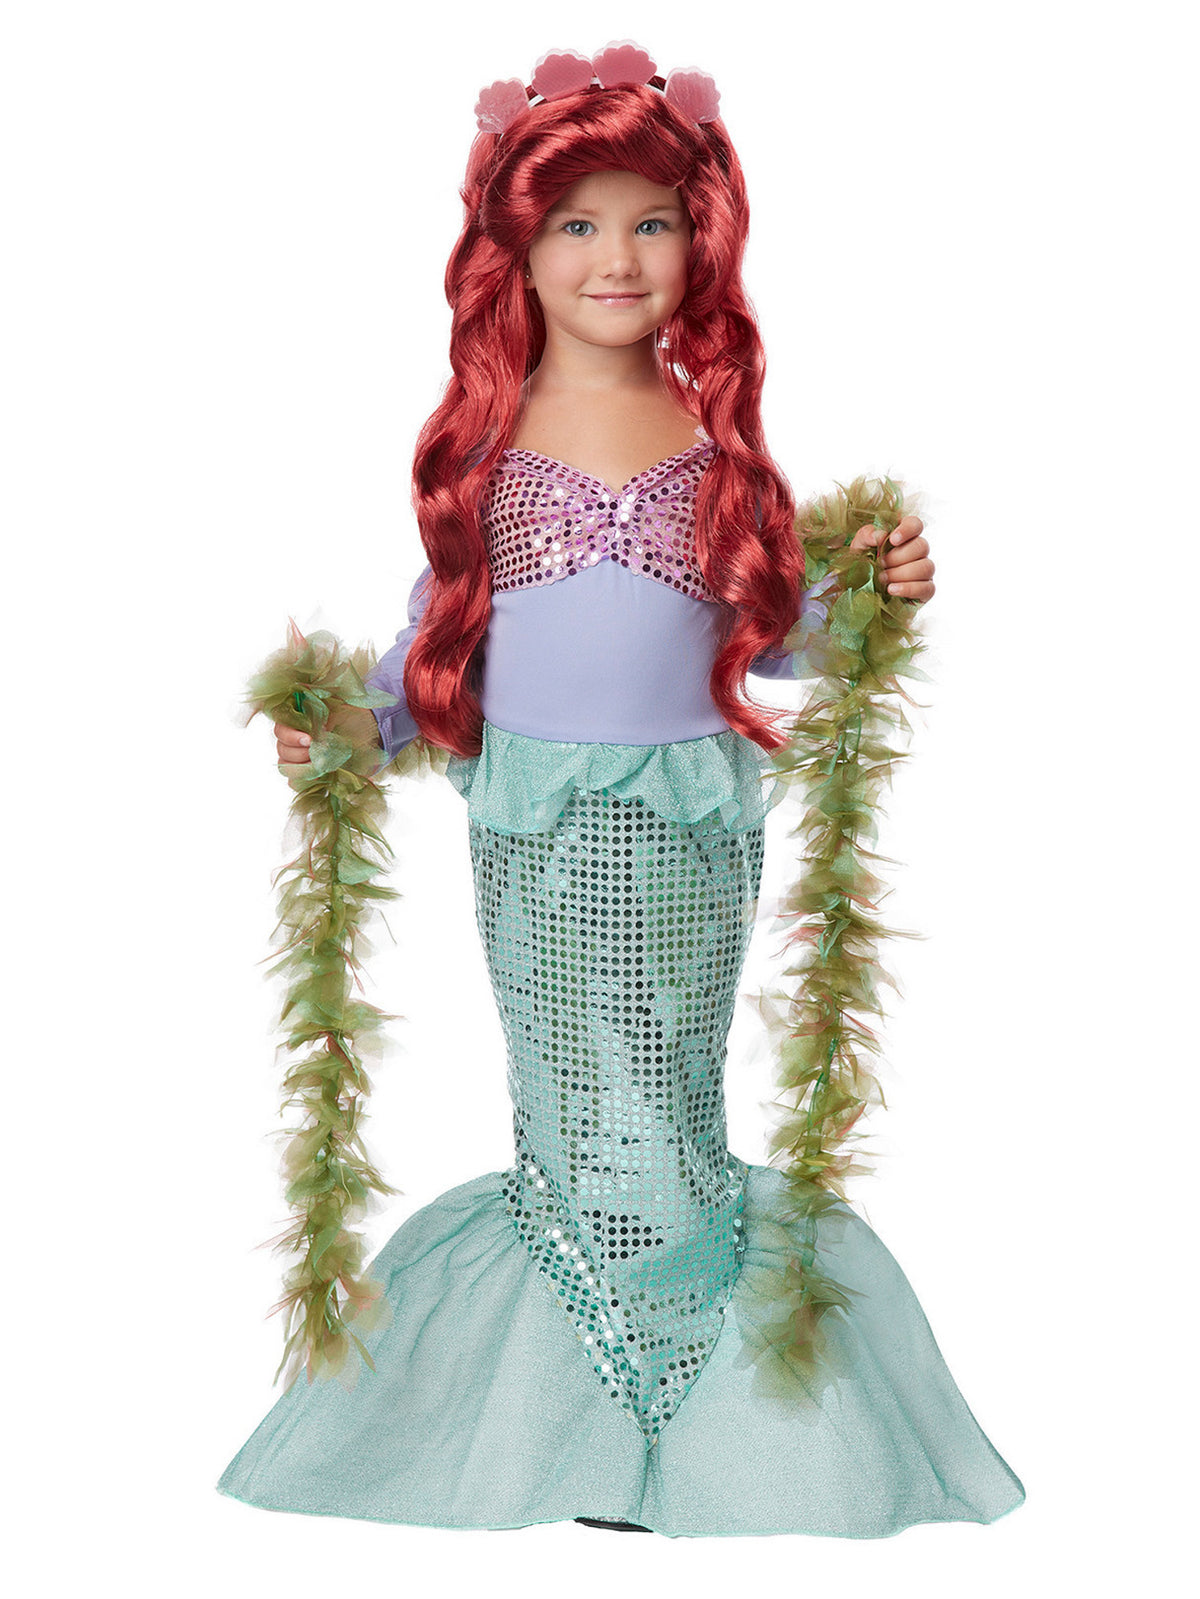 Lil' Mermaid Toddler Costume — Costume Super Center